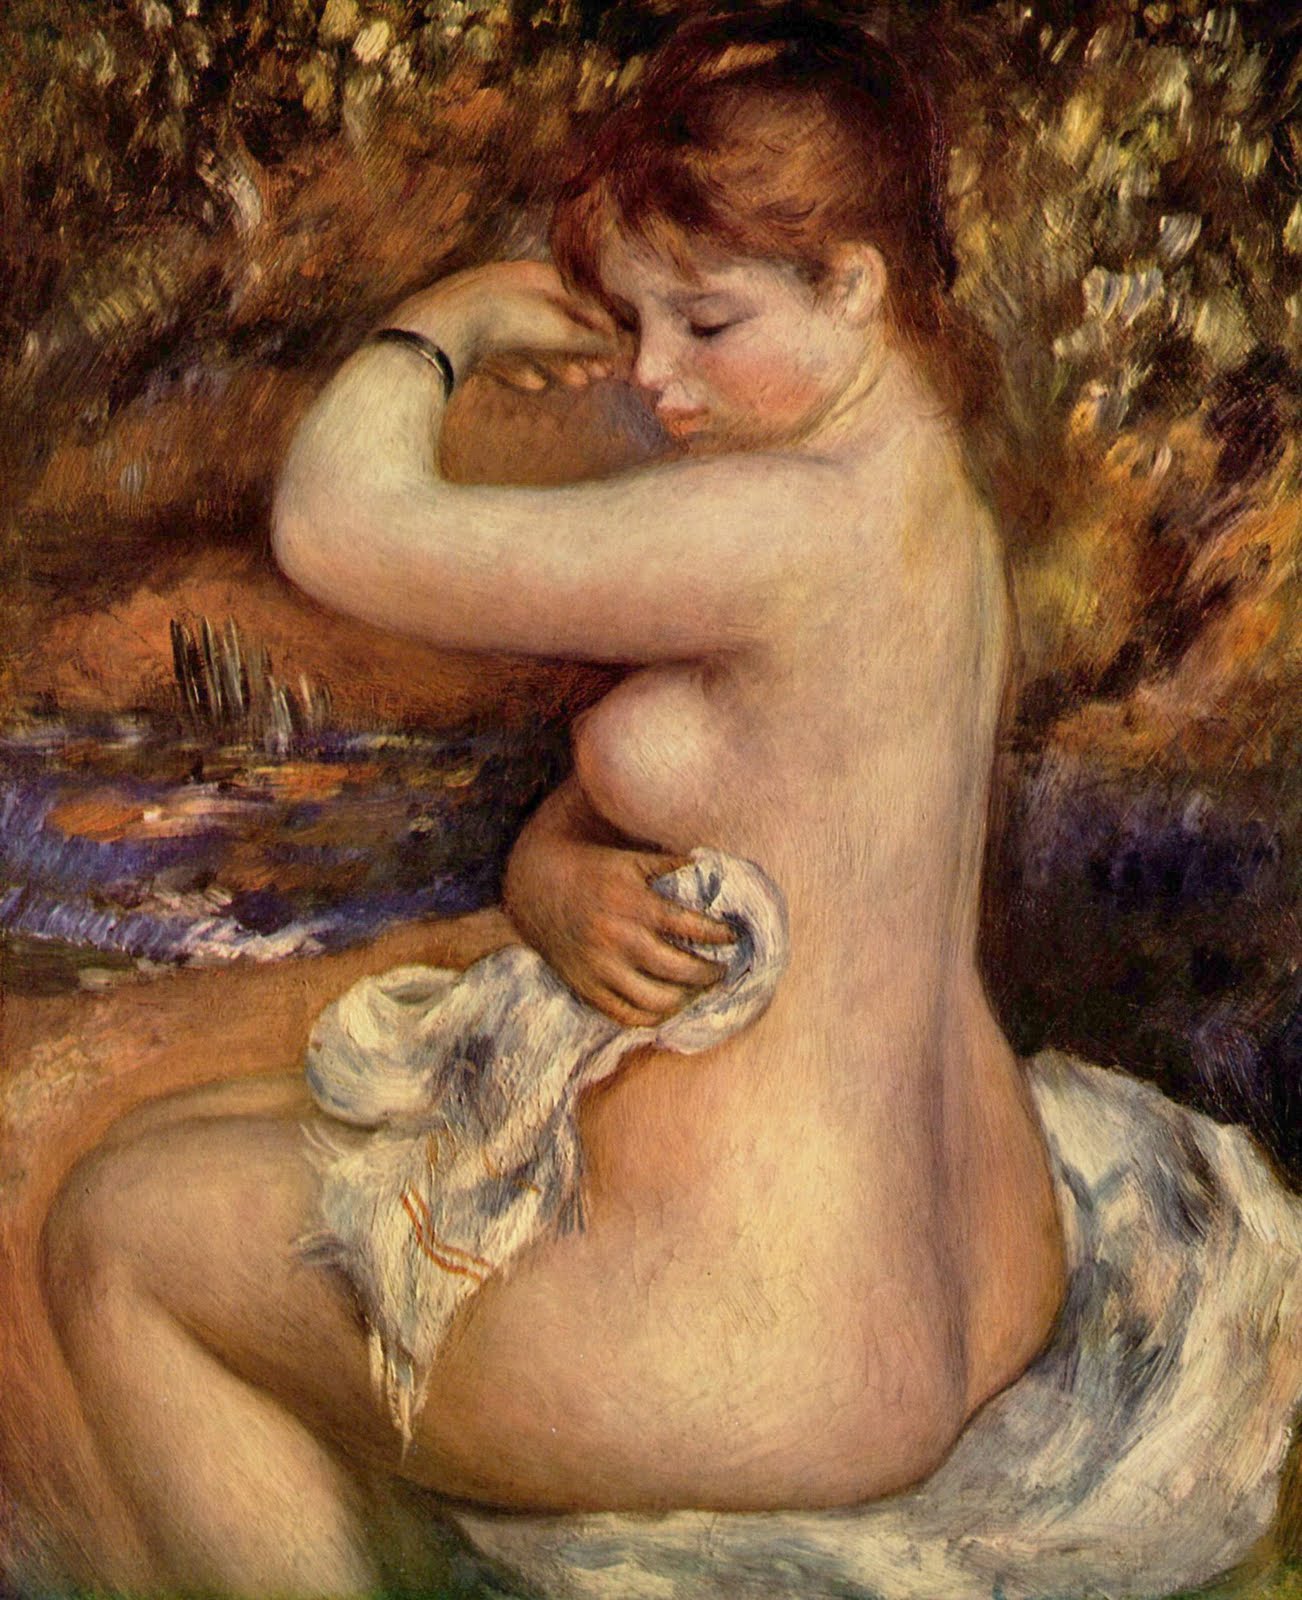 Pierre+Auguste+Renoir-1841-1-19 (329).jpg